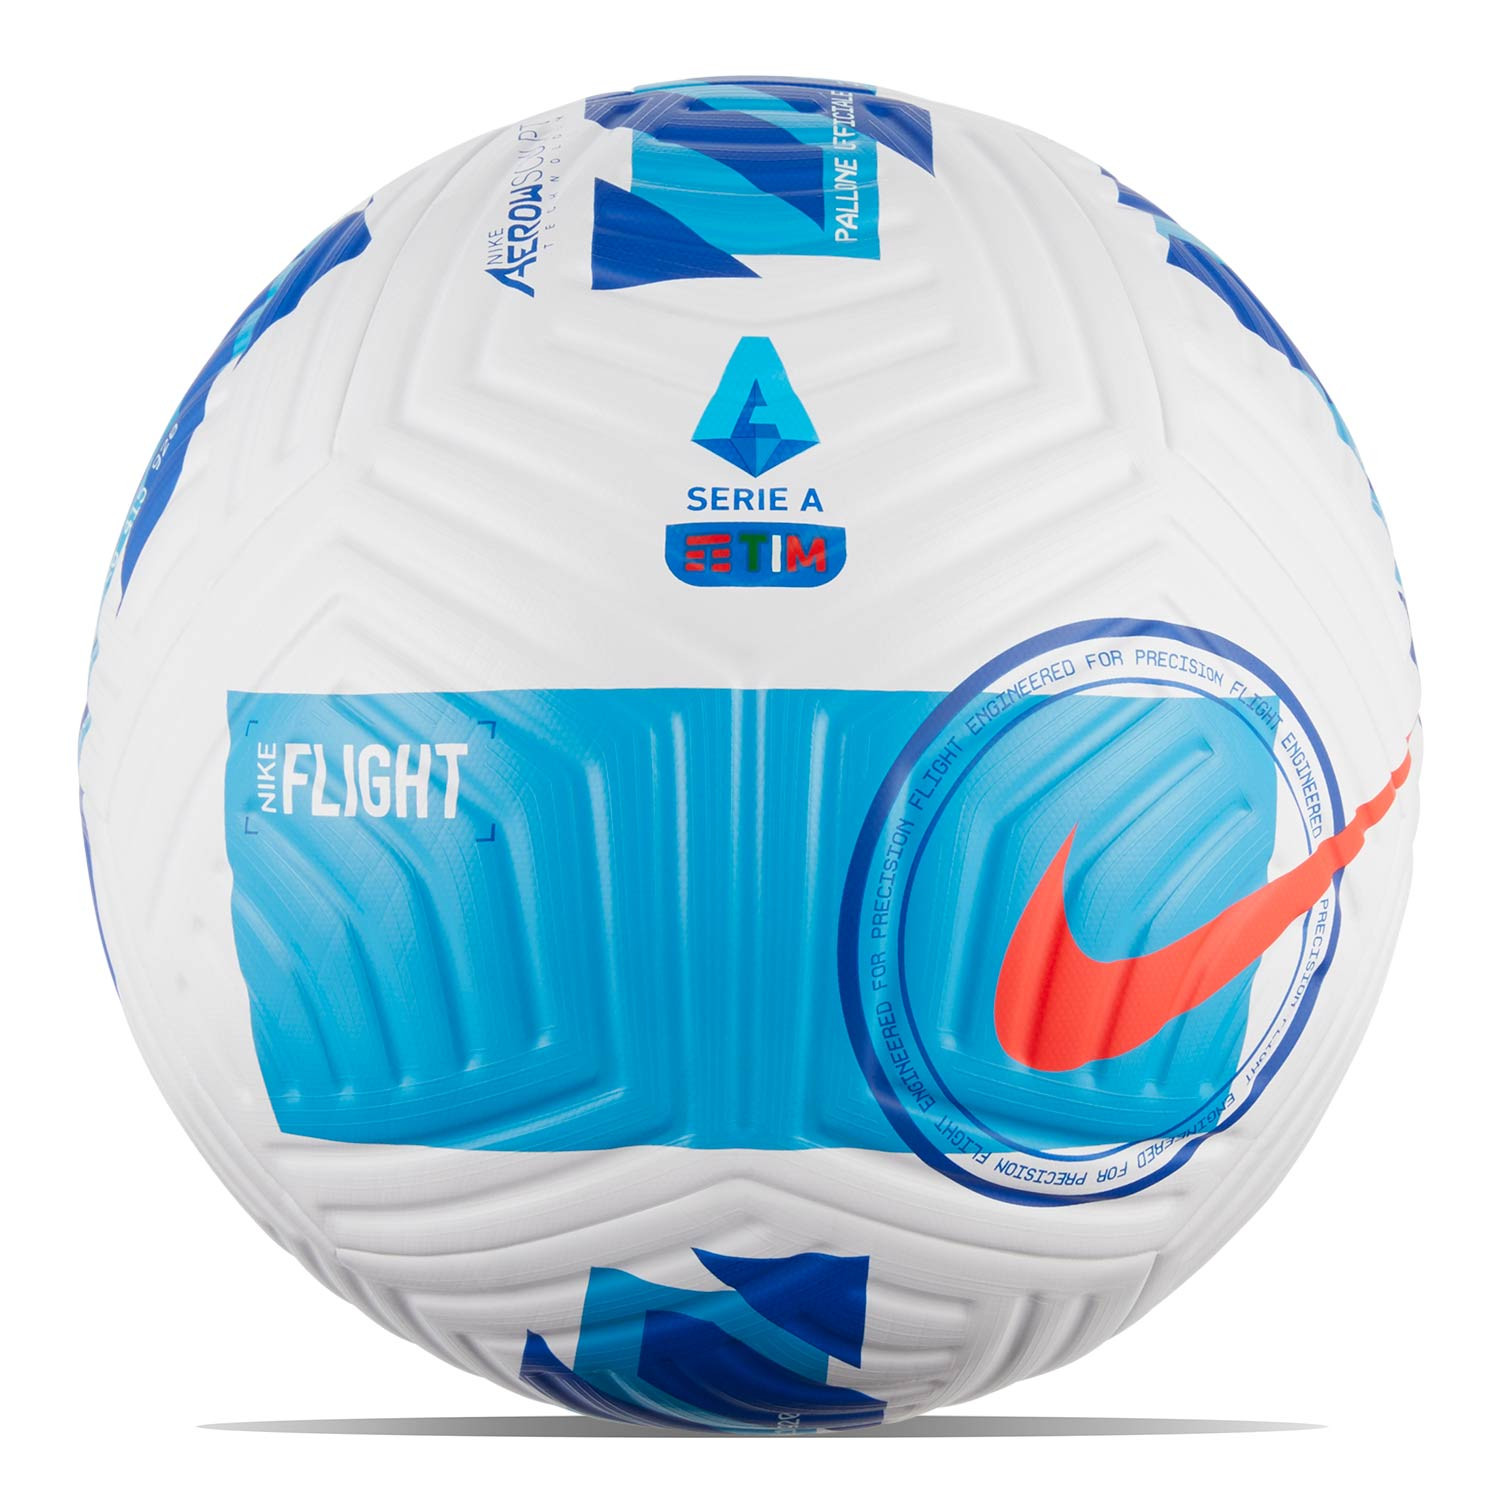 Meseta Mutilar Dedicación Balón Nike Serie A 21 22 Flight FIFA talla 5 blanco | futbolmania